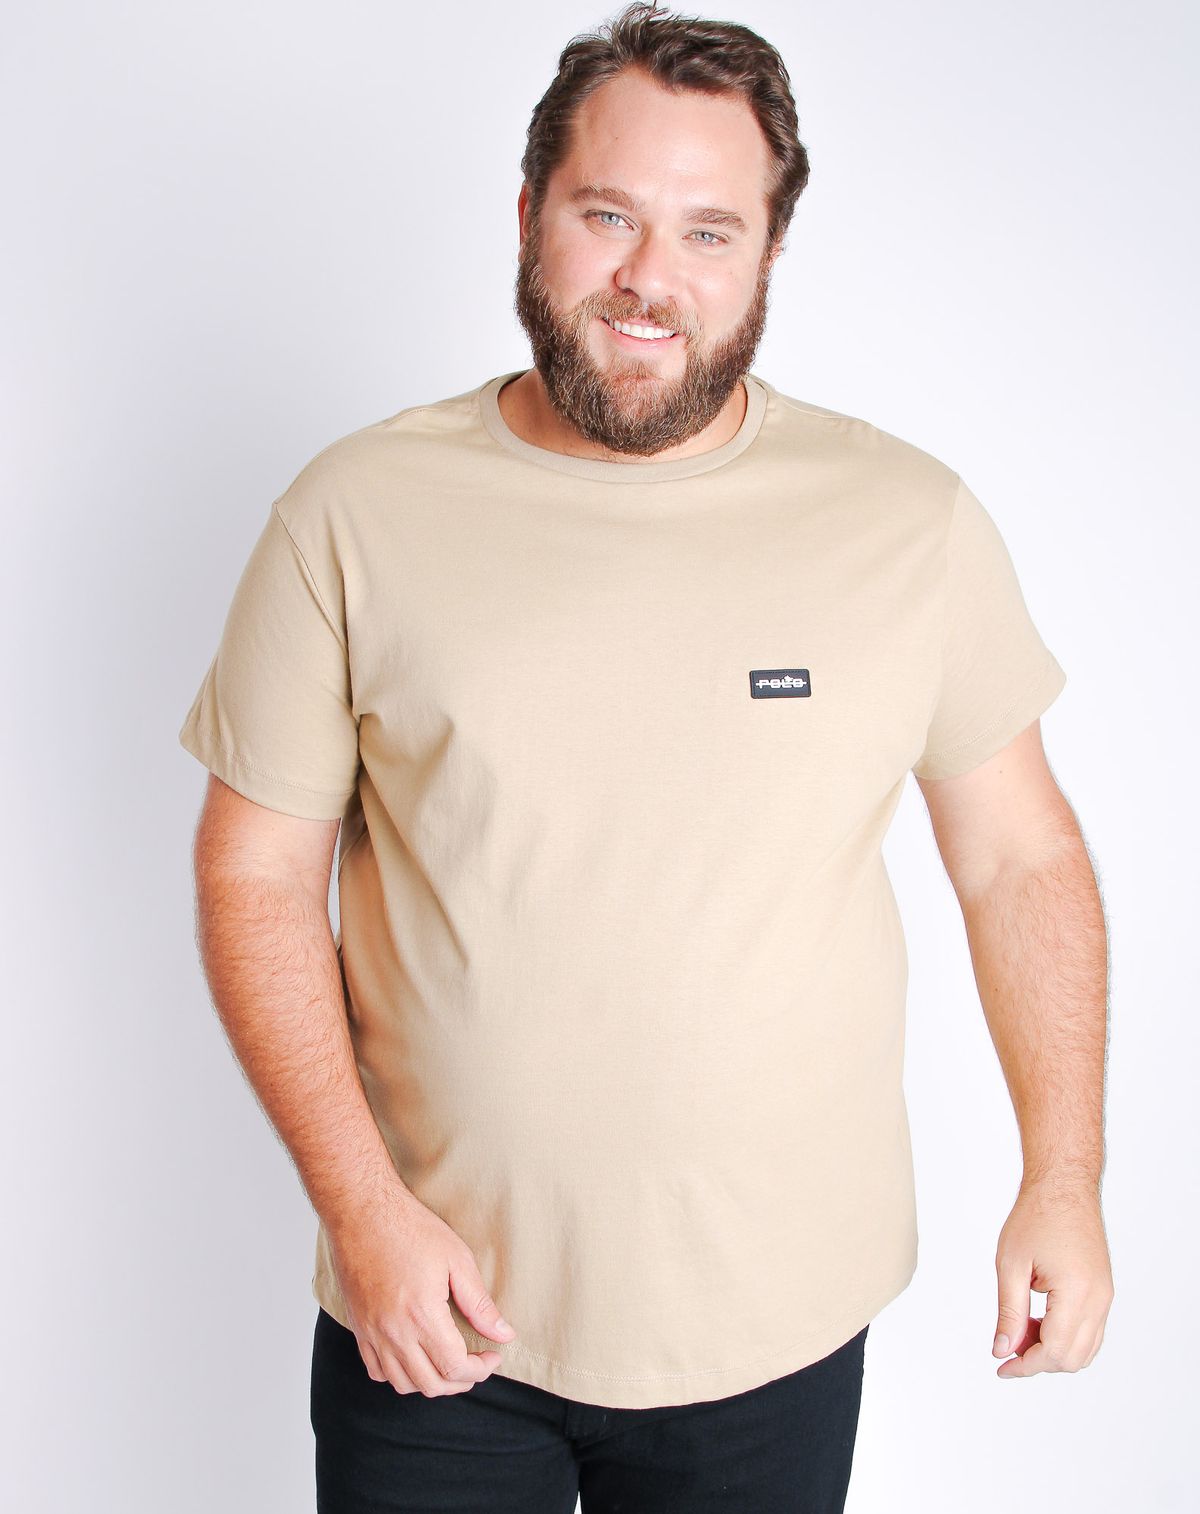 685039001-camiseta-plus-size-manga-curta-masculina-polo-basica-bege-g1-12c